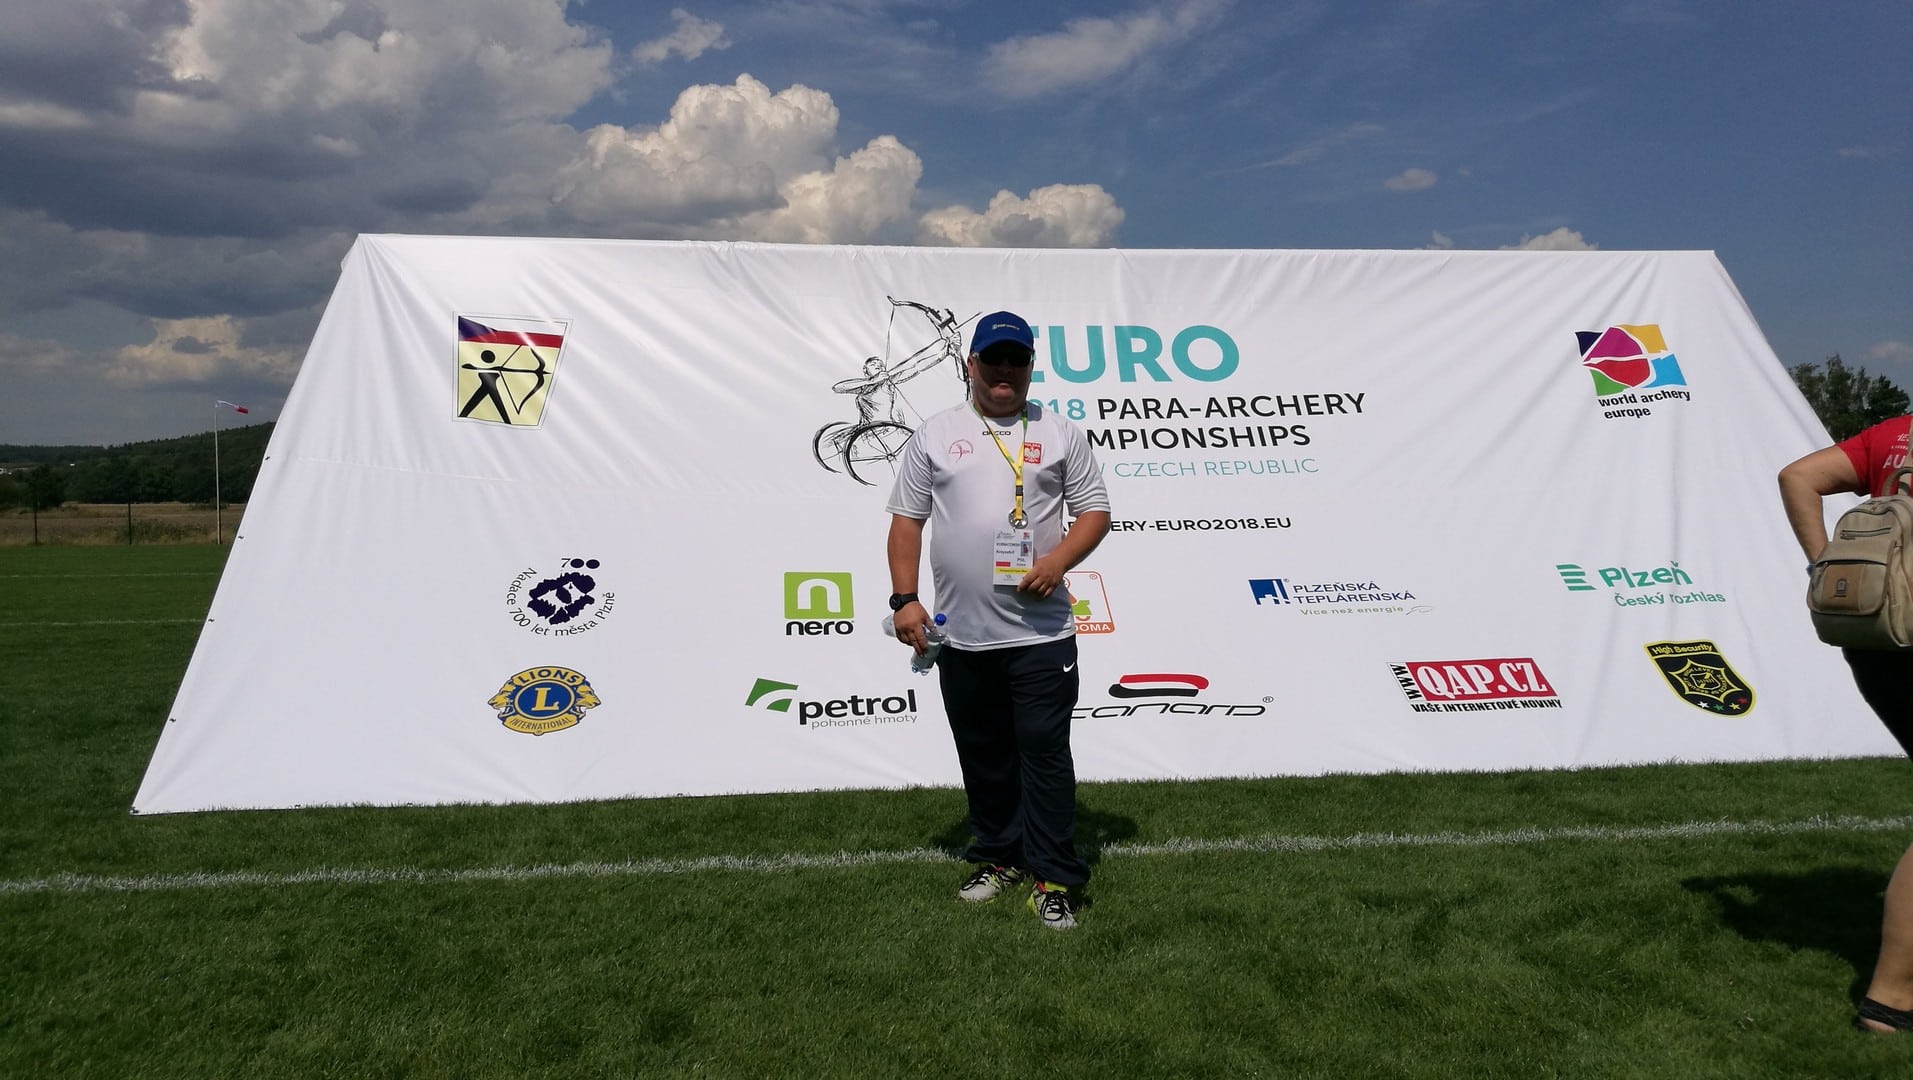 Podczas indywidualnych zmagań na Mistrzostwach Europy w Łucznictwie, Krzysztof Kornatowski z Polski uplasował się na 9. miejscu. Doceniamy ten wynik i życzymy kolejnych sukcesów naszemu utalentowanemu rodakowi!